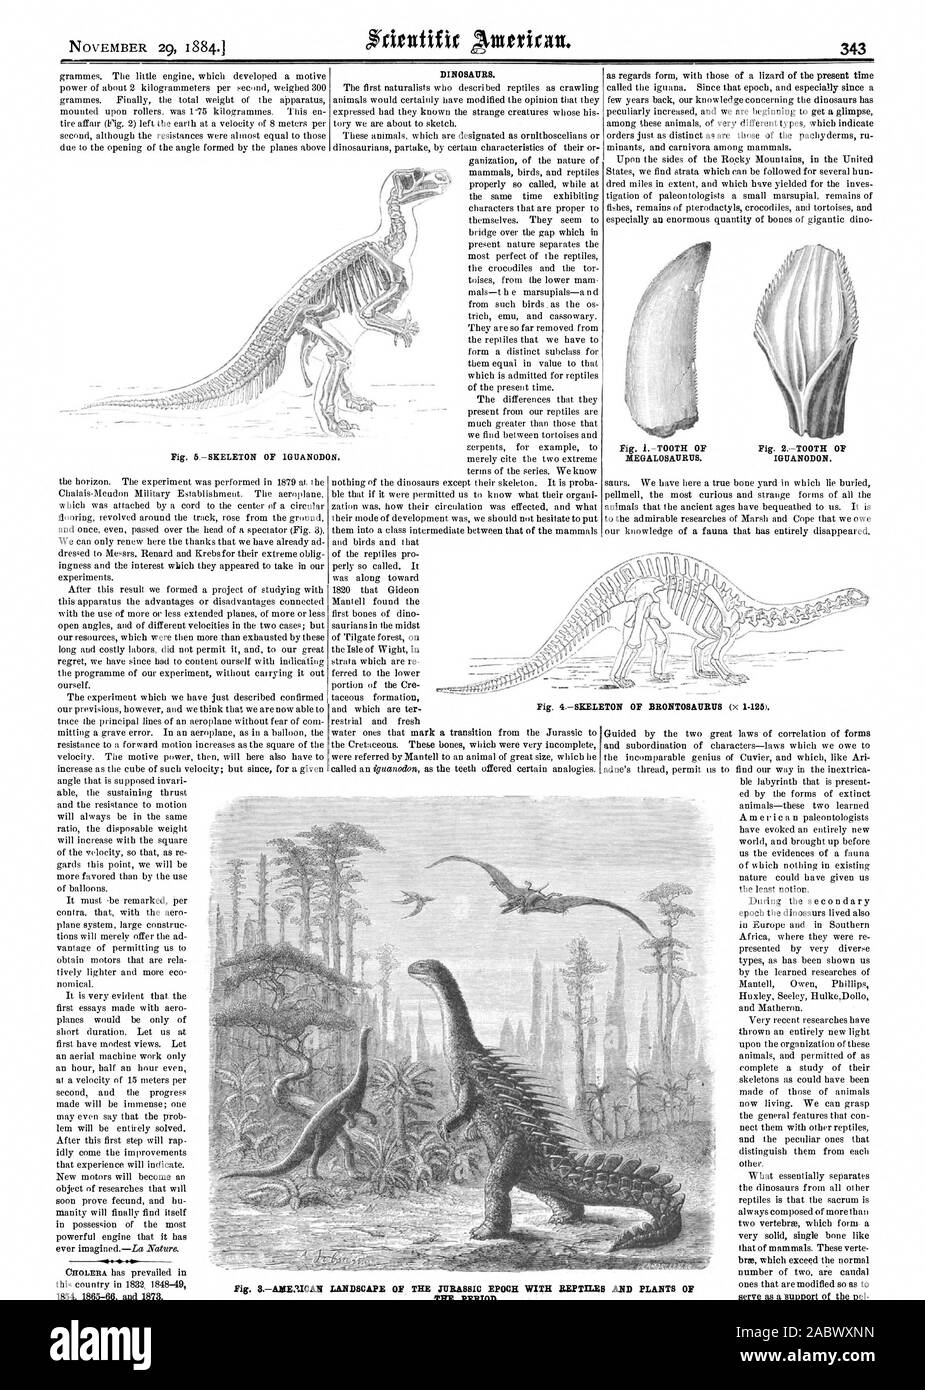 NOVEMBER 29 1884.1 343 Dinosaurier. Abb. 8 Lage 3 ICAN LANDSCHAFT DER JURASSIC EPOCHE MIT REPTILIEN UND PFLANZEN DER PERIODE., Scientific American, 1884-11-29 Stockfoto